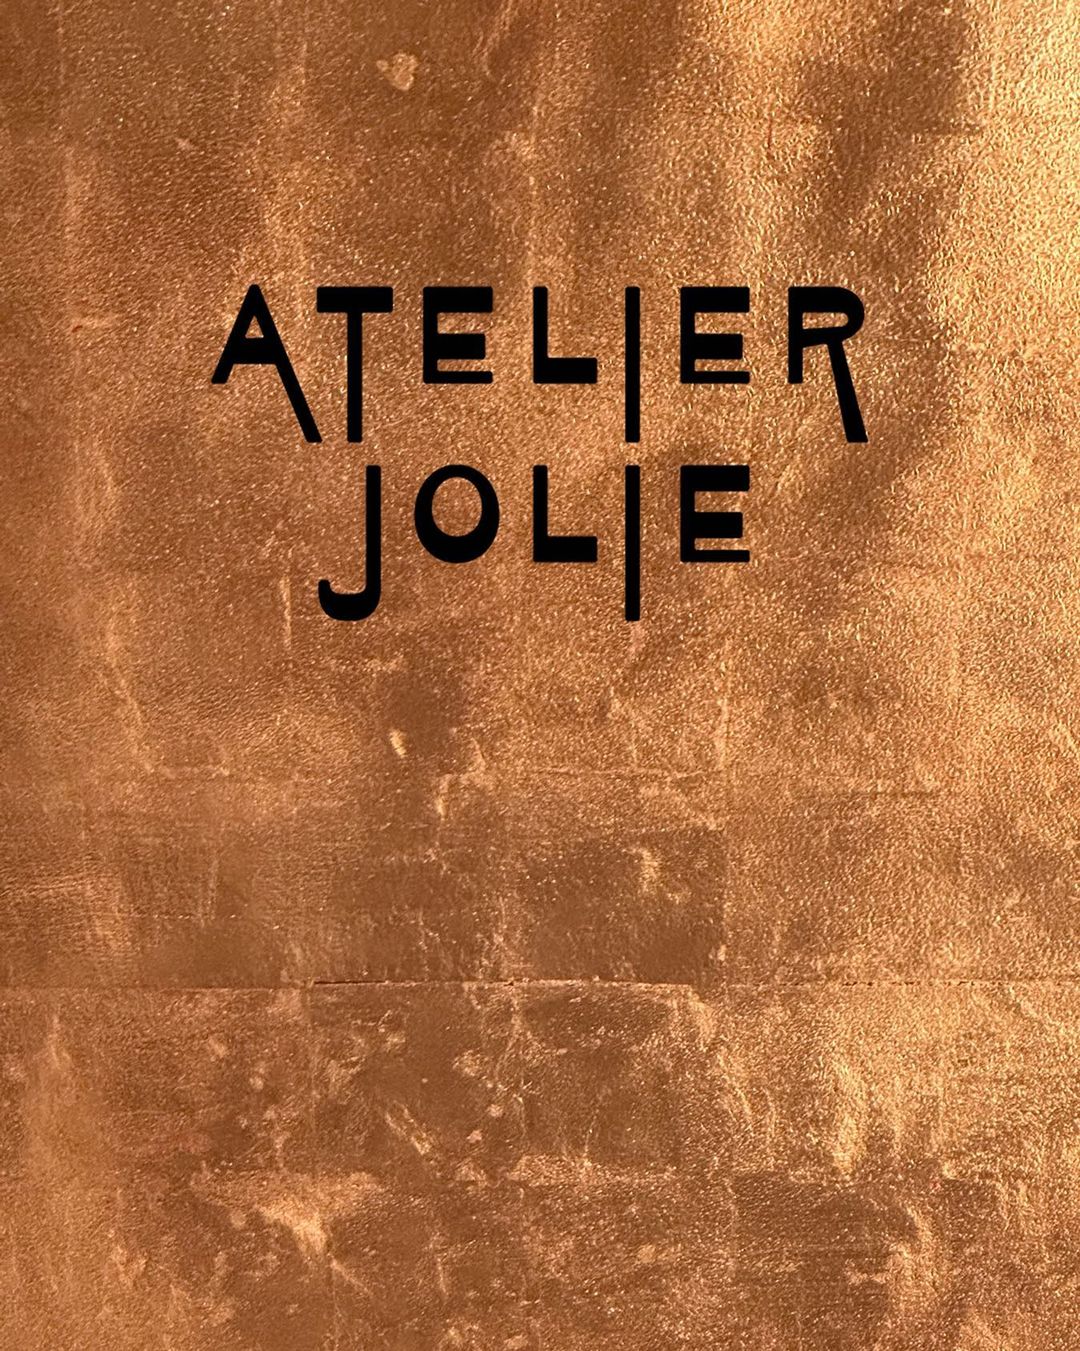 Atelier Jolie розміститься у студії Жана-Мішеля Баскія